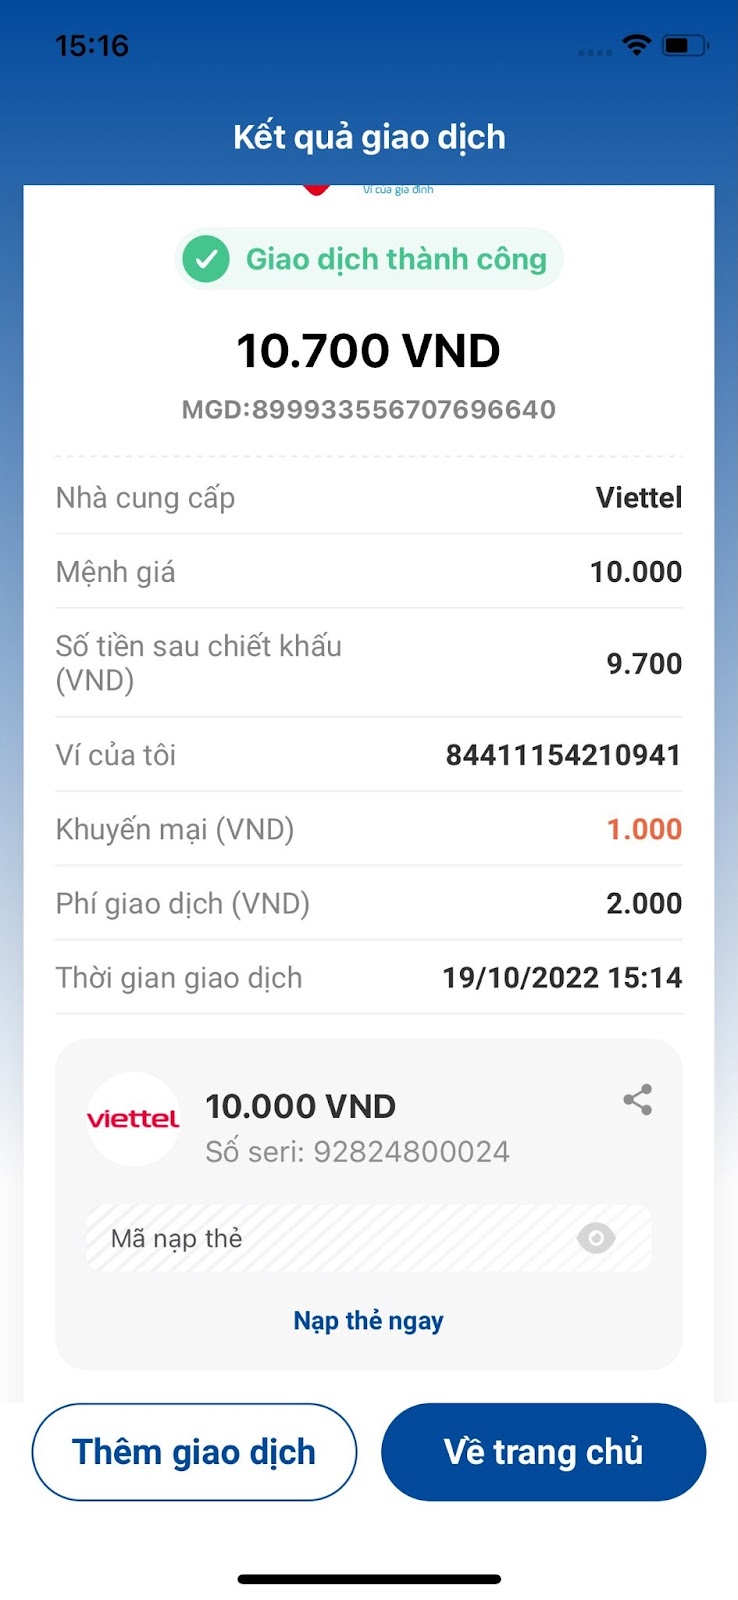 Khi hệ thống thông báo giao dịch thành công, lúc này bạn đã mua xong thẻ điện thoại Viettel online